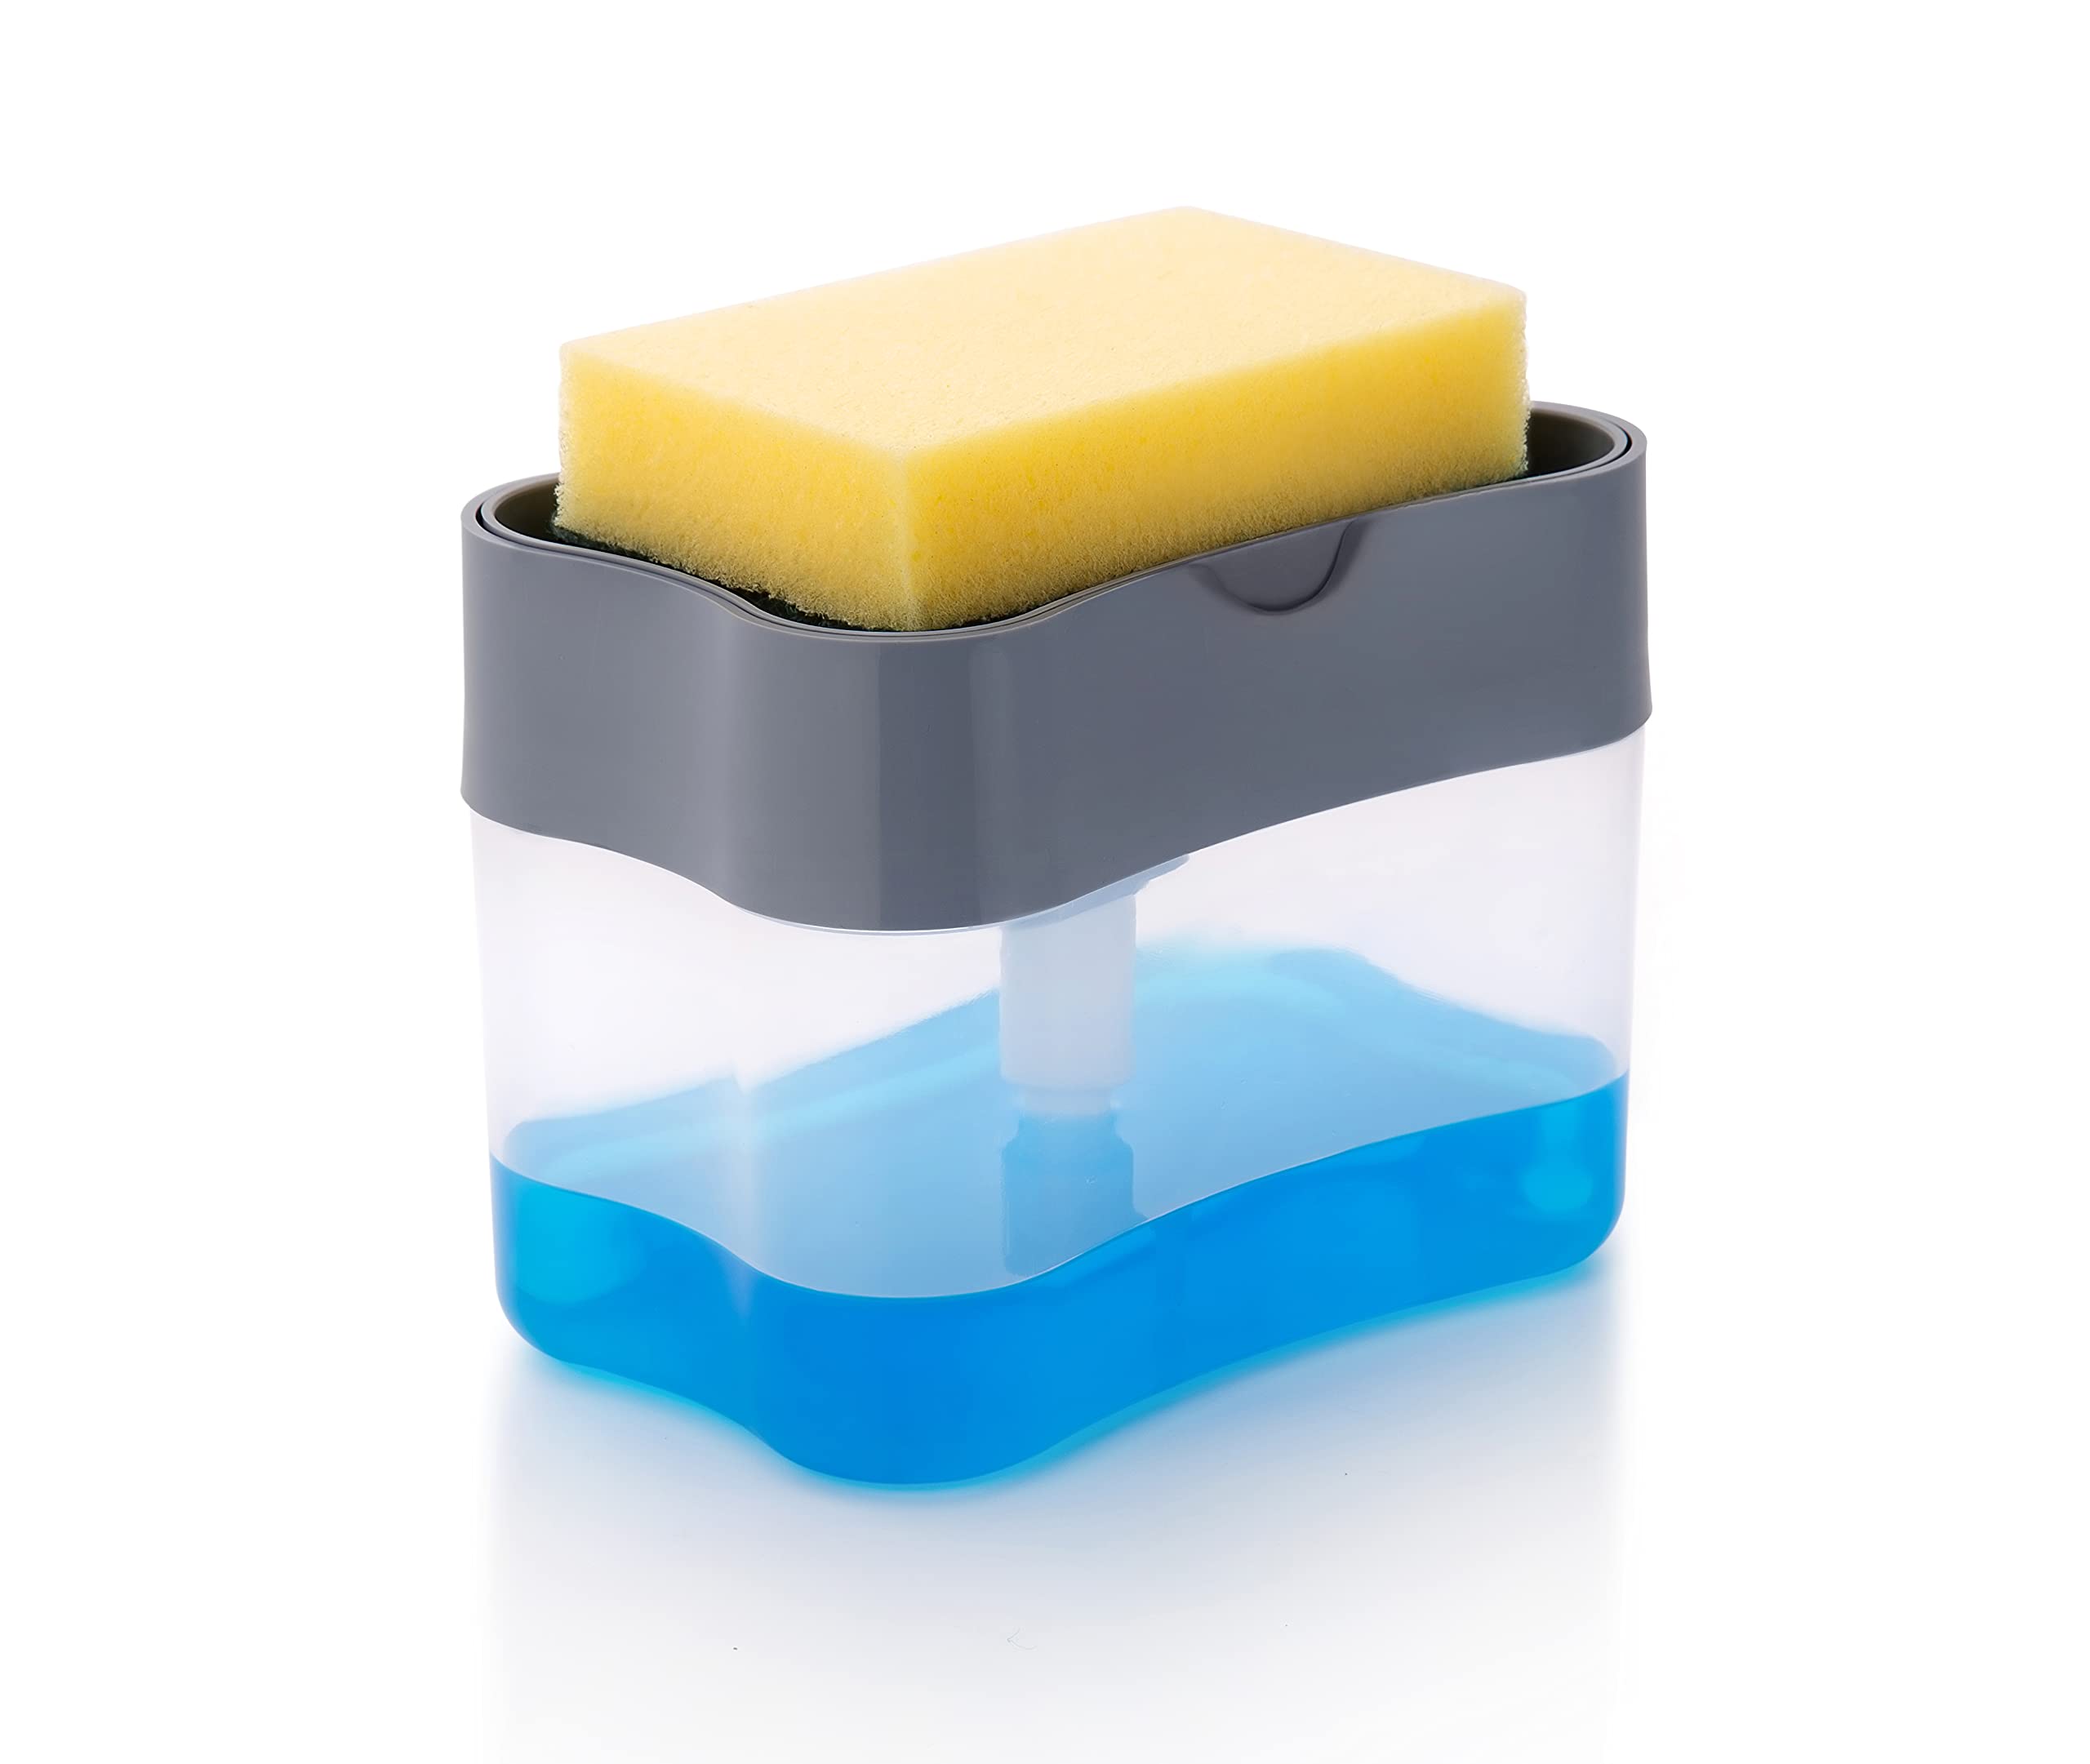 Plantex ABS Plastic 2 In1 Soap Dispenser/Sponge Holder with Sponge for Kitchen (Multi-Color, 400ml)